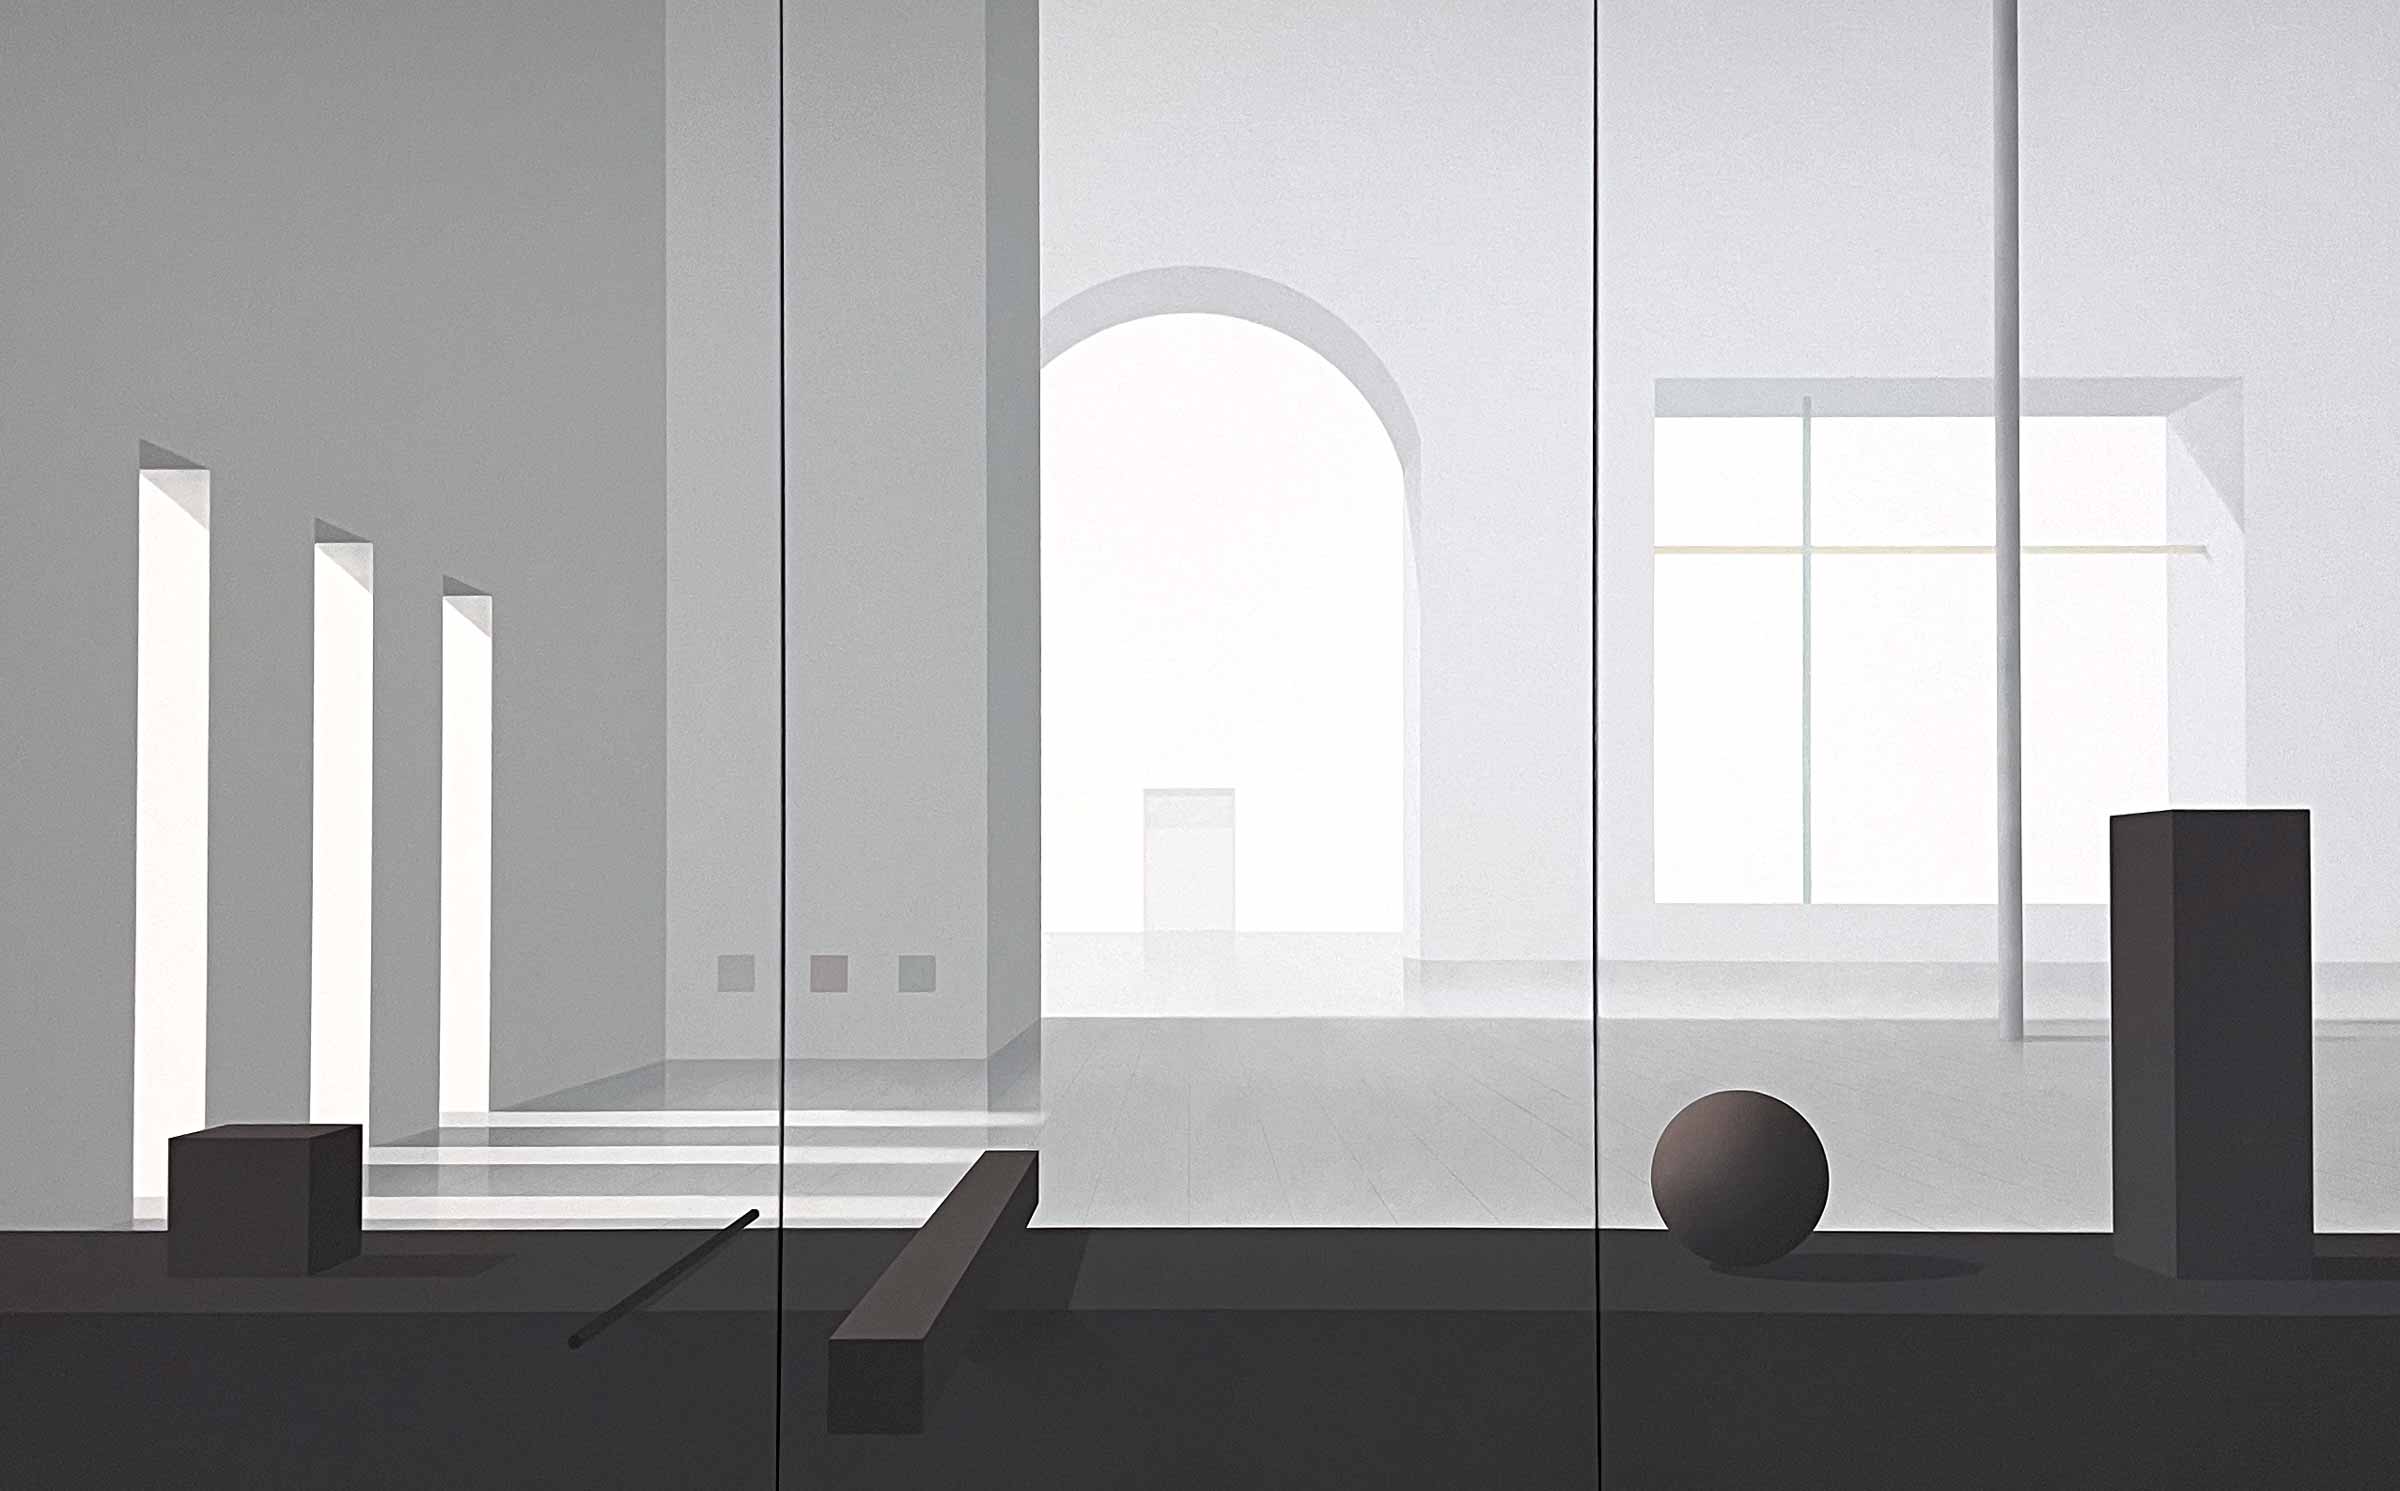 Acryl-Gemälde eines leeren Raumes mit einfallendem Licht aus Fenstern im hinteren Bereich